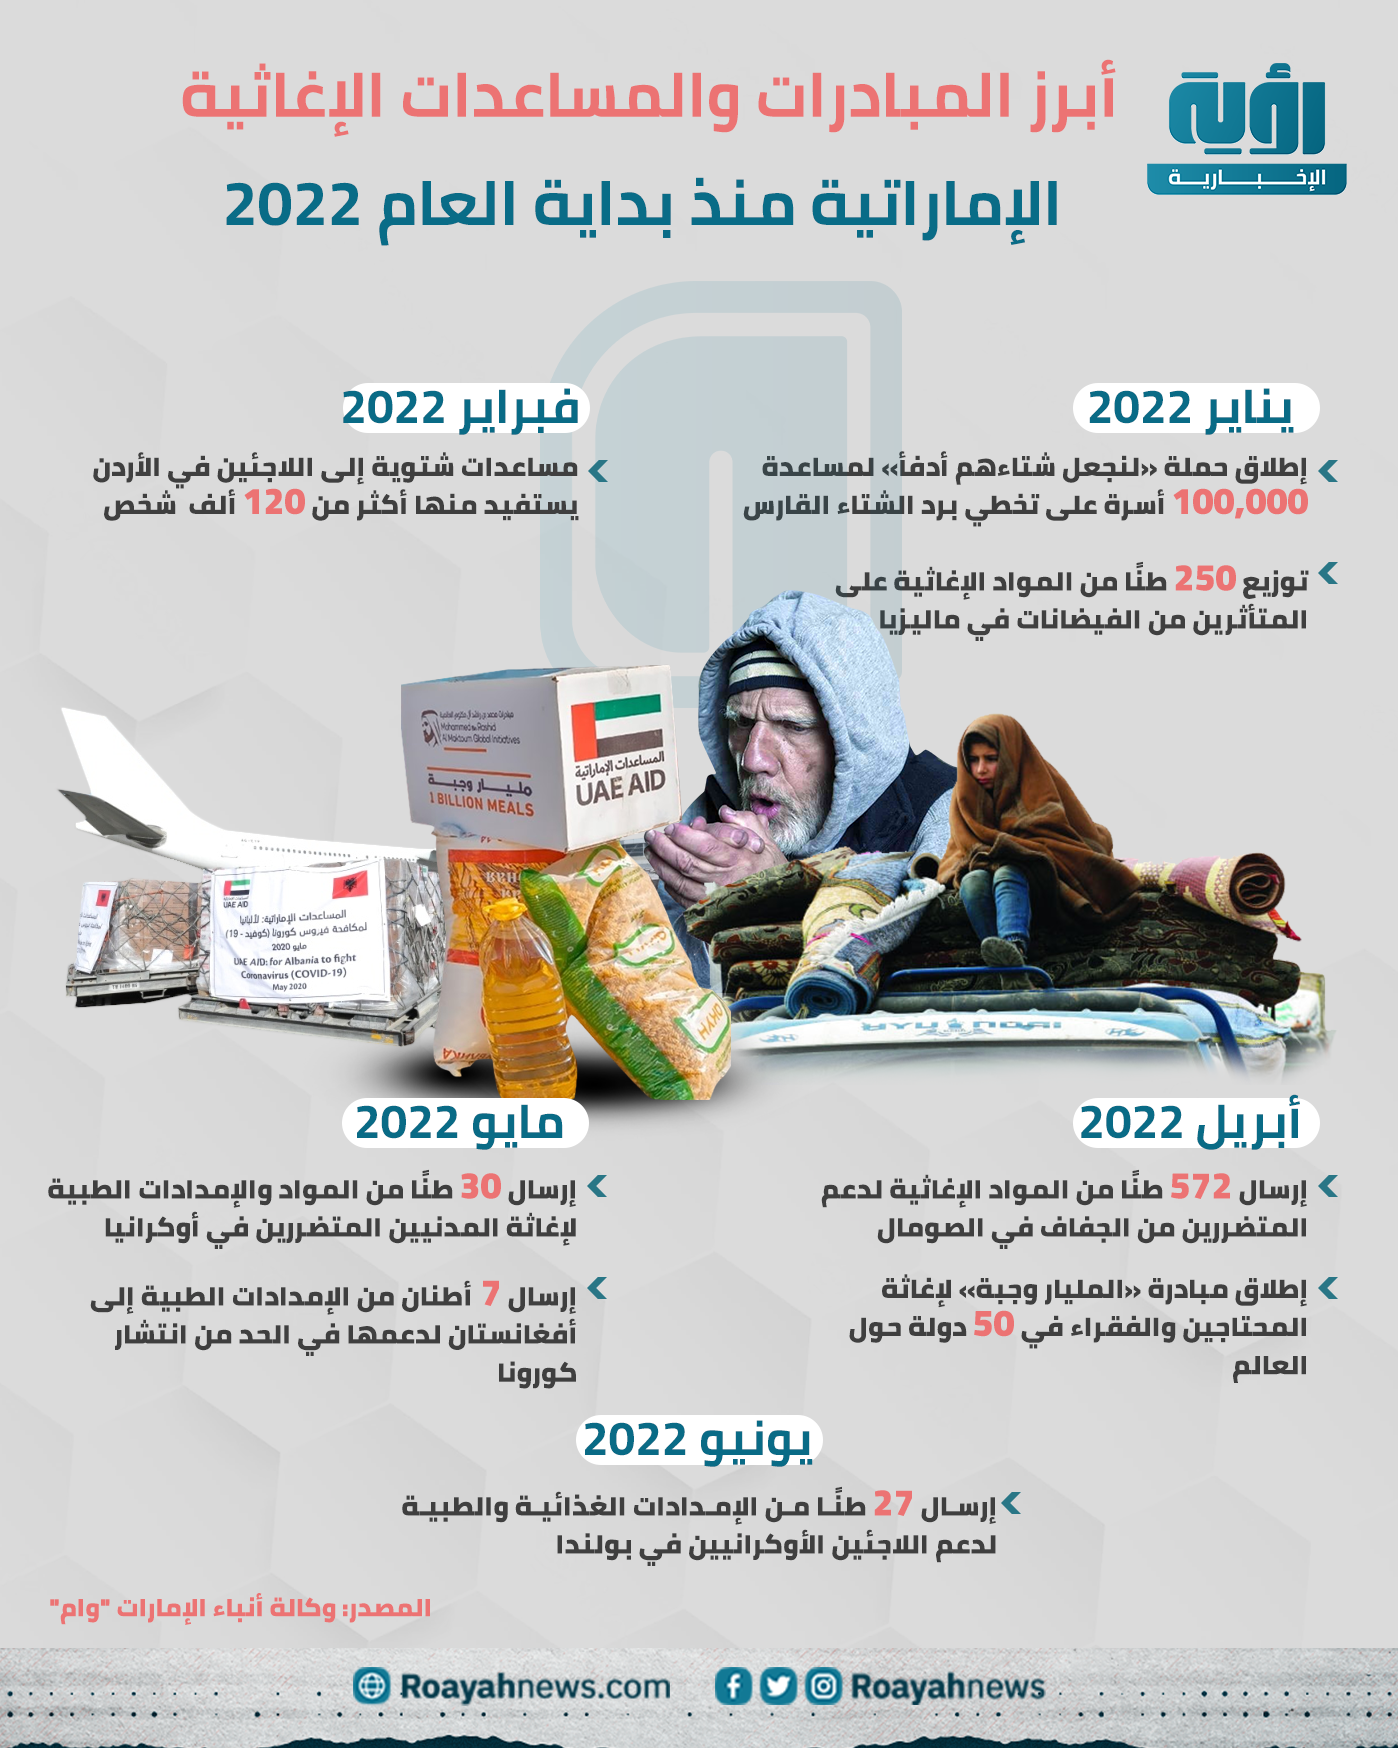 أبرز المبادرات والمساعدات الإغاثية الإماراتية منذ بداية العام 2022